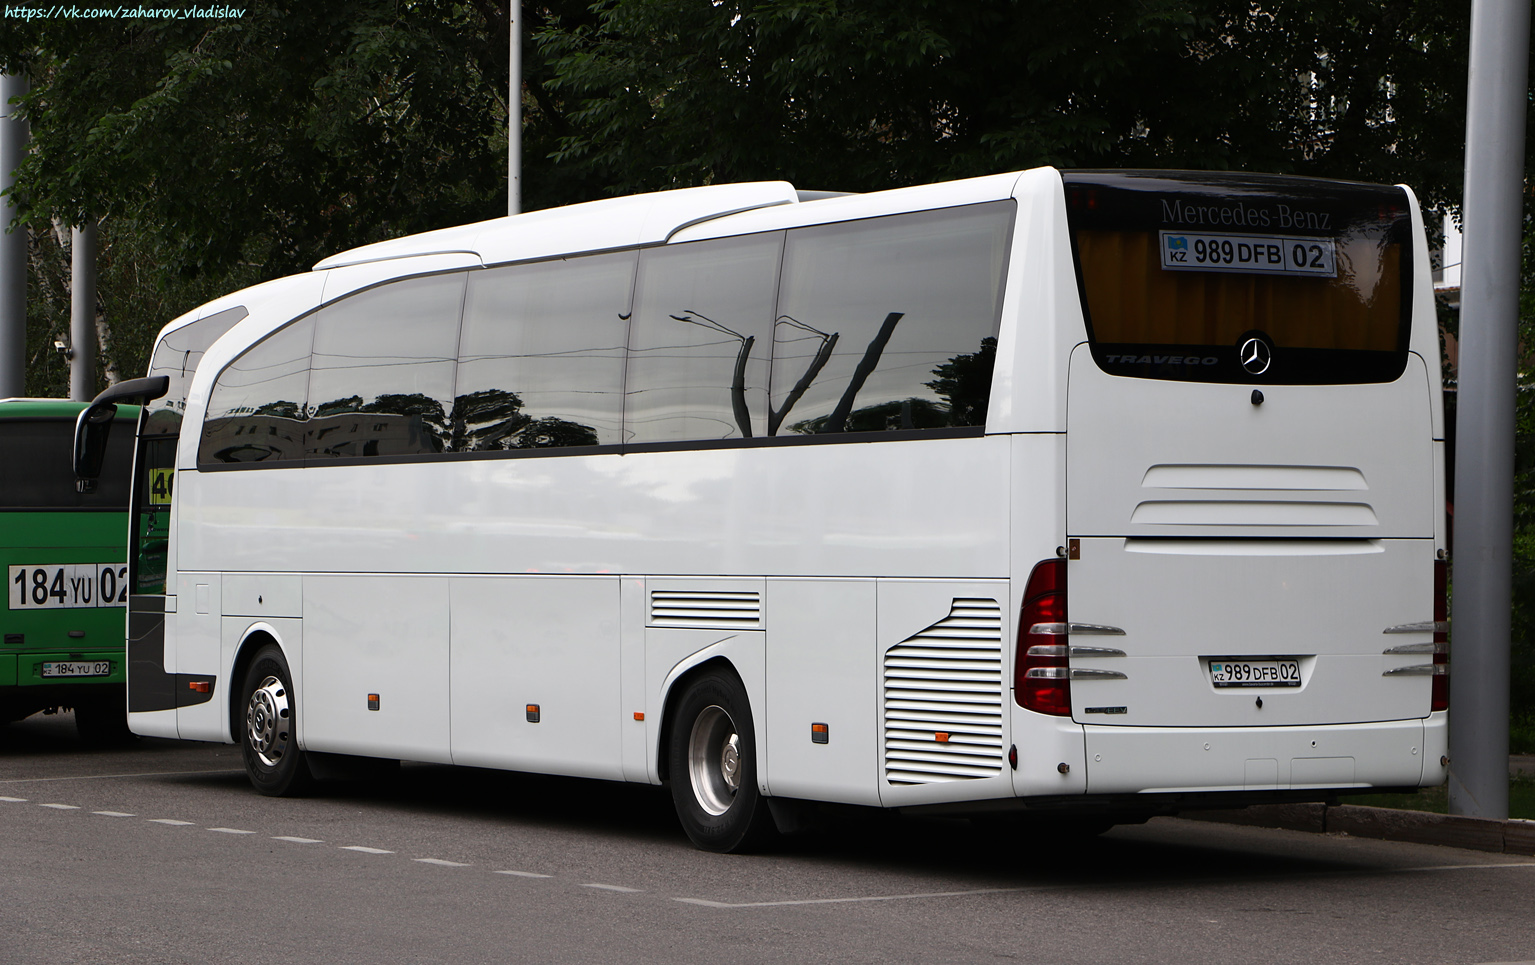 Almaty, Mercedes-Benz Travego II 15RHD facelift Nr. 989 DFB 02